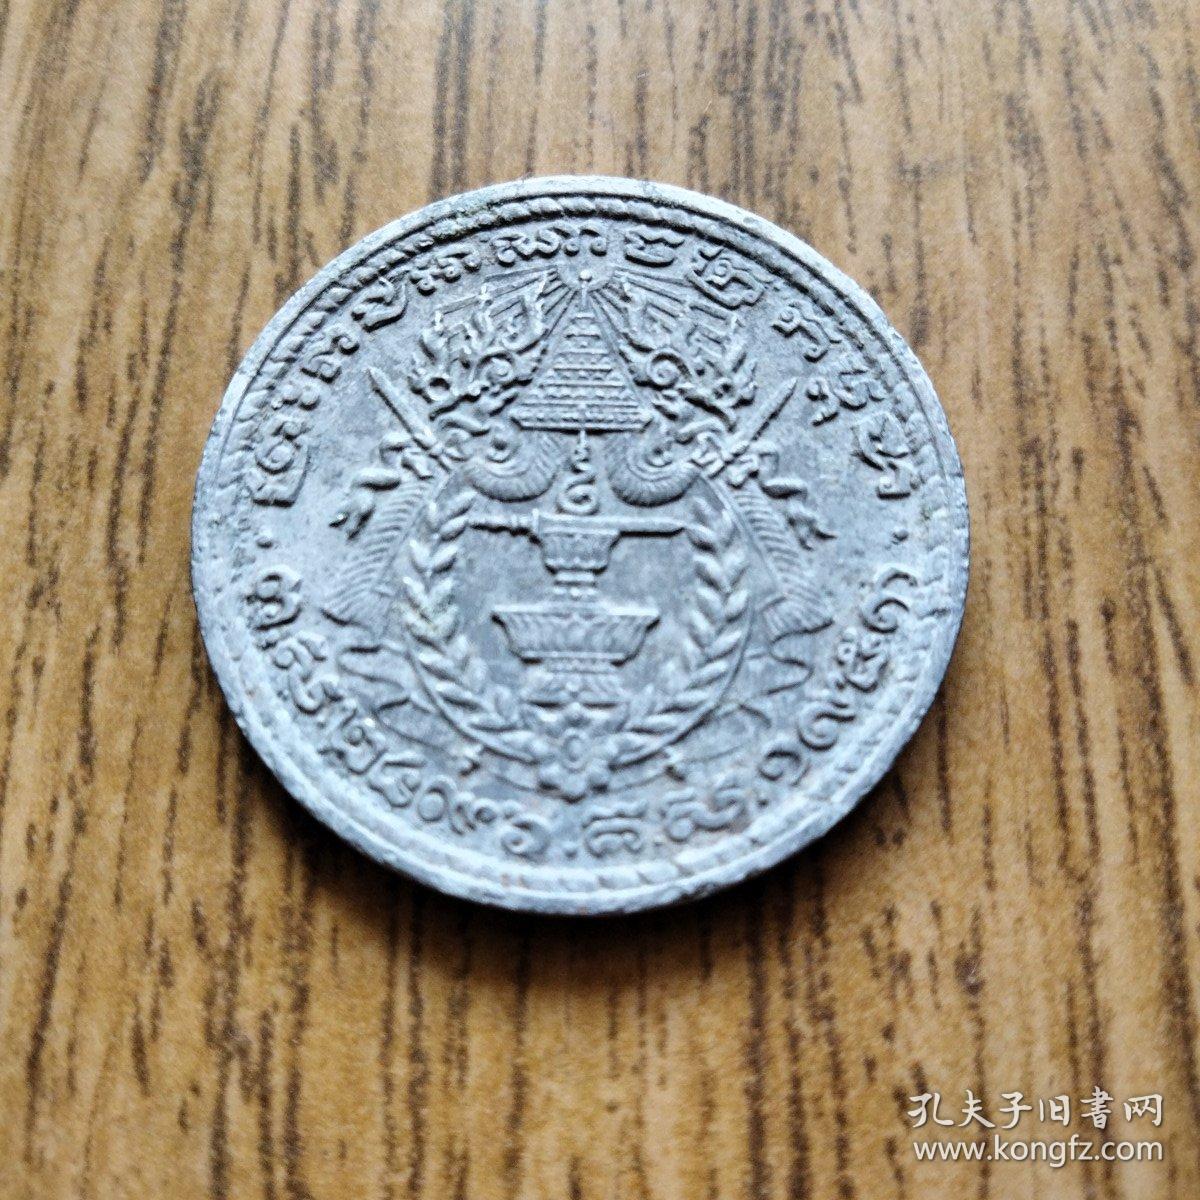 1953年 柬埔寨王国 独立后 首版佛坛老铝币50分 ——东南亚老币收藏